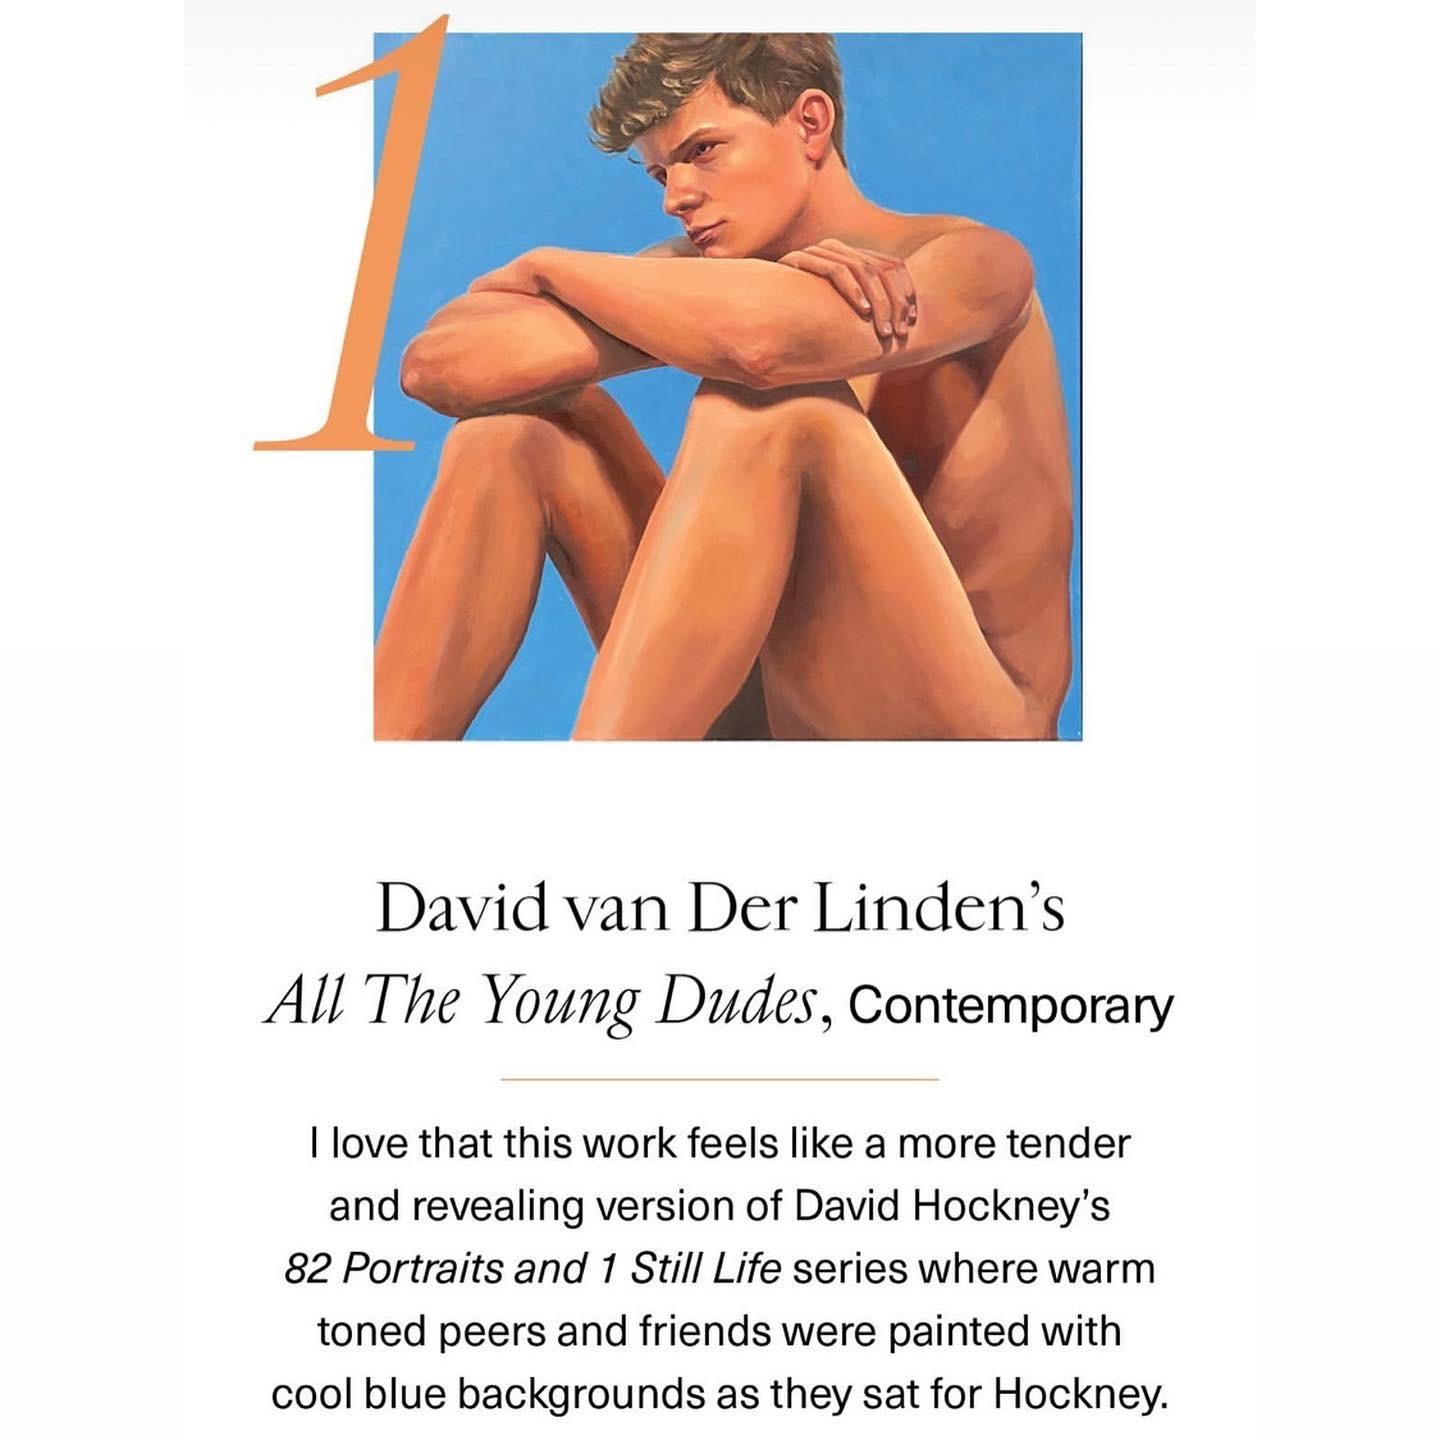 Dieses Gemälde war die Nummer 1 von 1stDibs-Kuratorin Brooke Wise  Favorit. Sie nannte es: eine zartere und offenere Version von David Hockneys 82 Porträts und einem Stillleben. 
Ein schönes Kompliment für unseren Künstler David van der